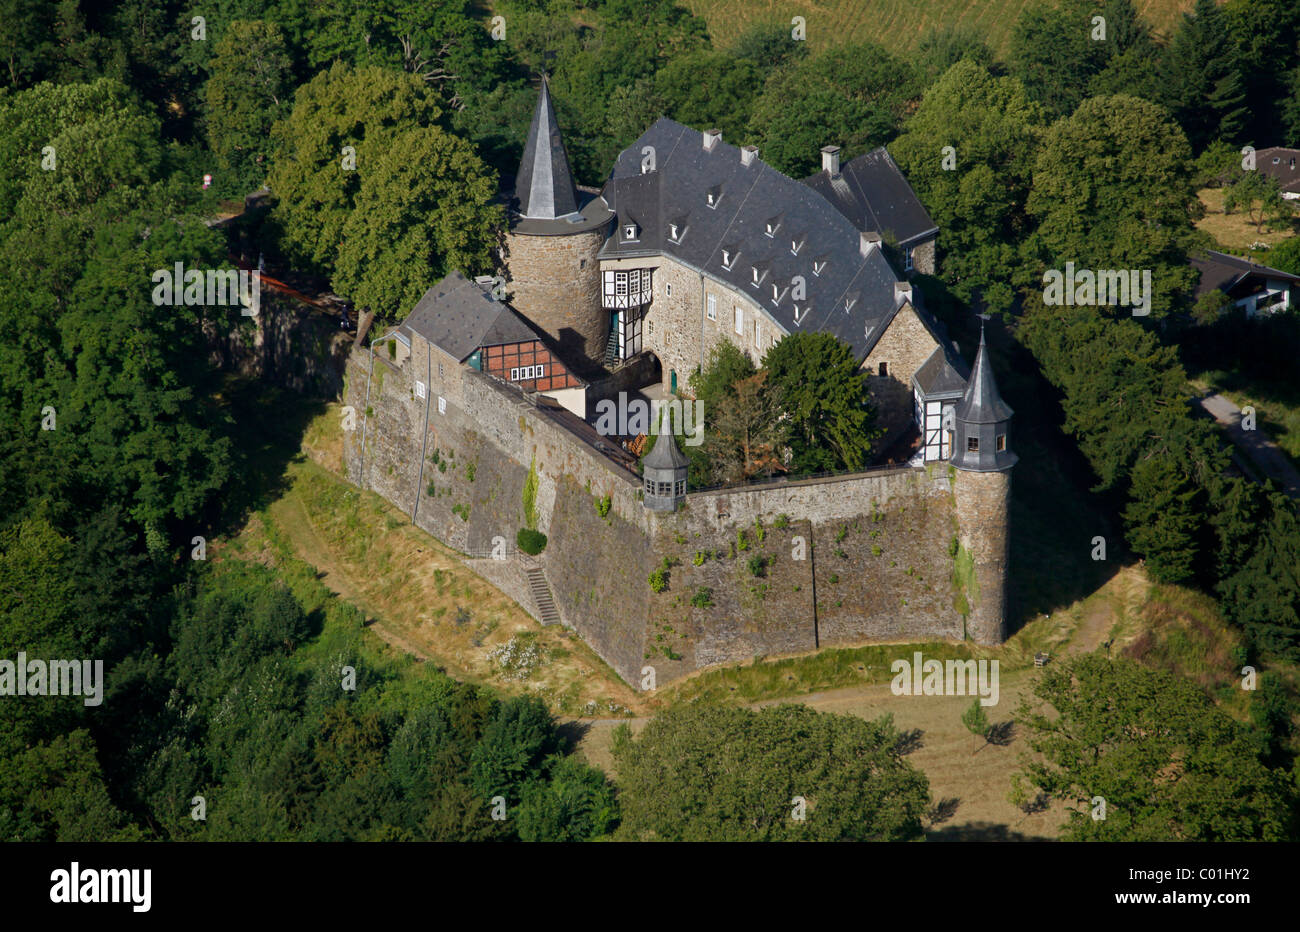 Vue aérienne, motte, rénové Schloss Hohenlimburg castle, Hagen, région de la Ruhr, Nordrhein-Westfalen, Germany, Europe Banque D'Images